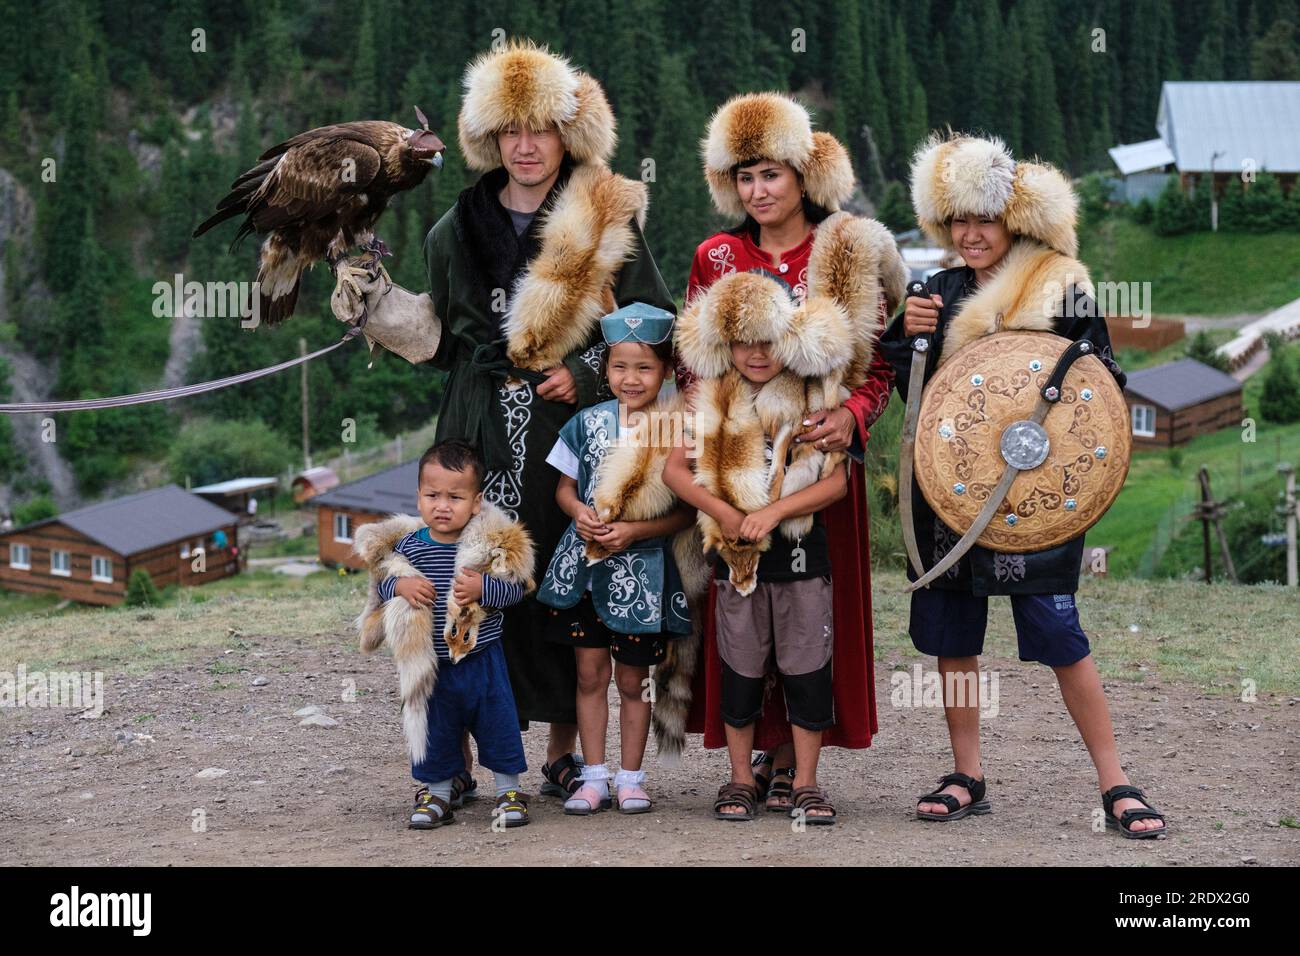 Kazakistan, Parco Nazionale dei Laghi di Kolsay. Famiglia in posa per una foto in costume tradizionale con falco con cappuccio. Foto Stock